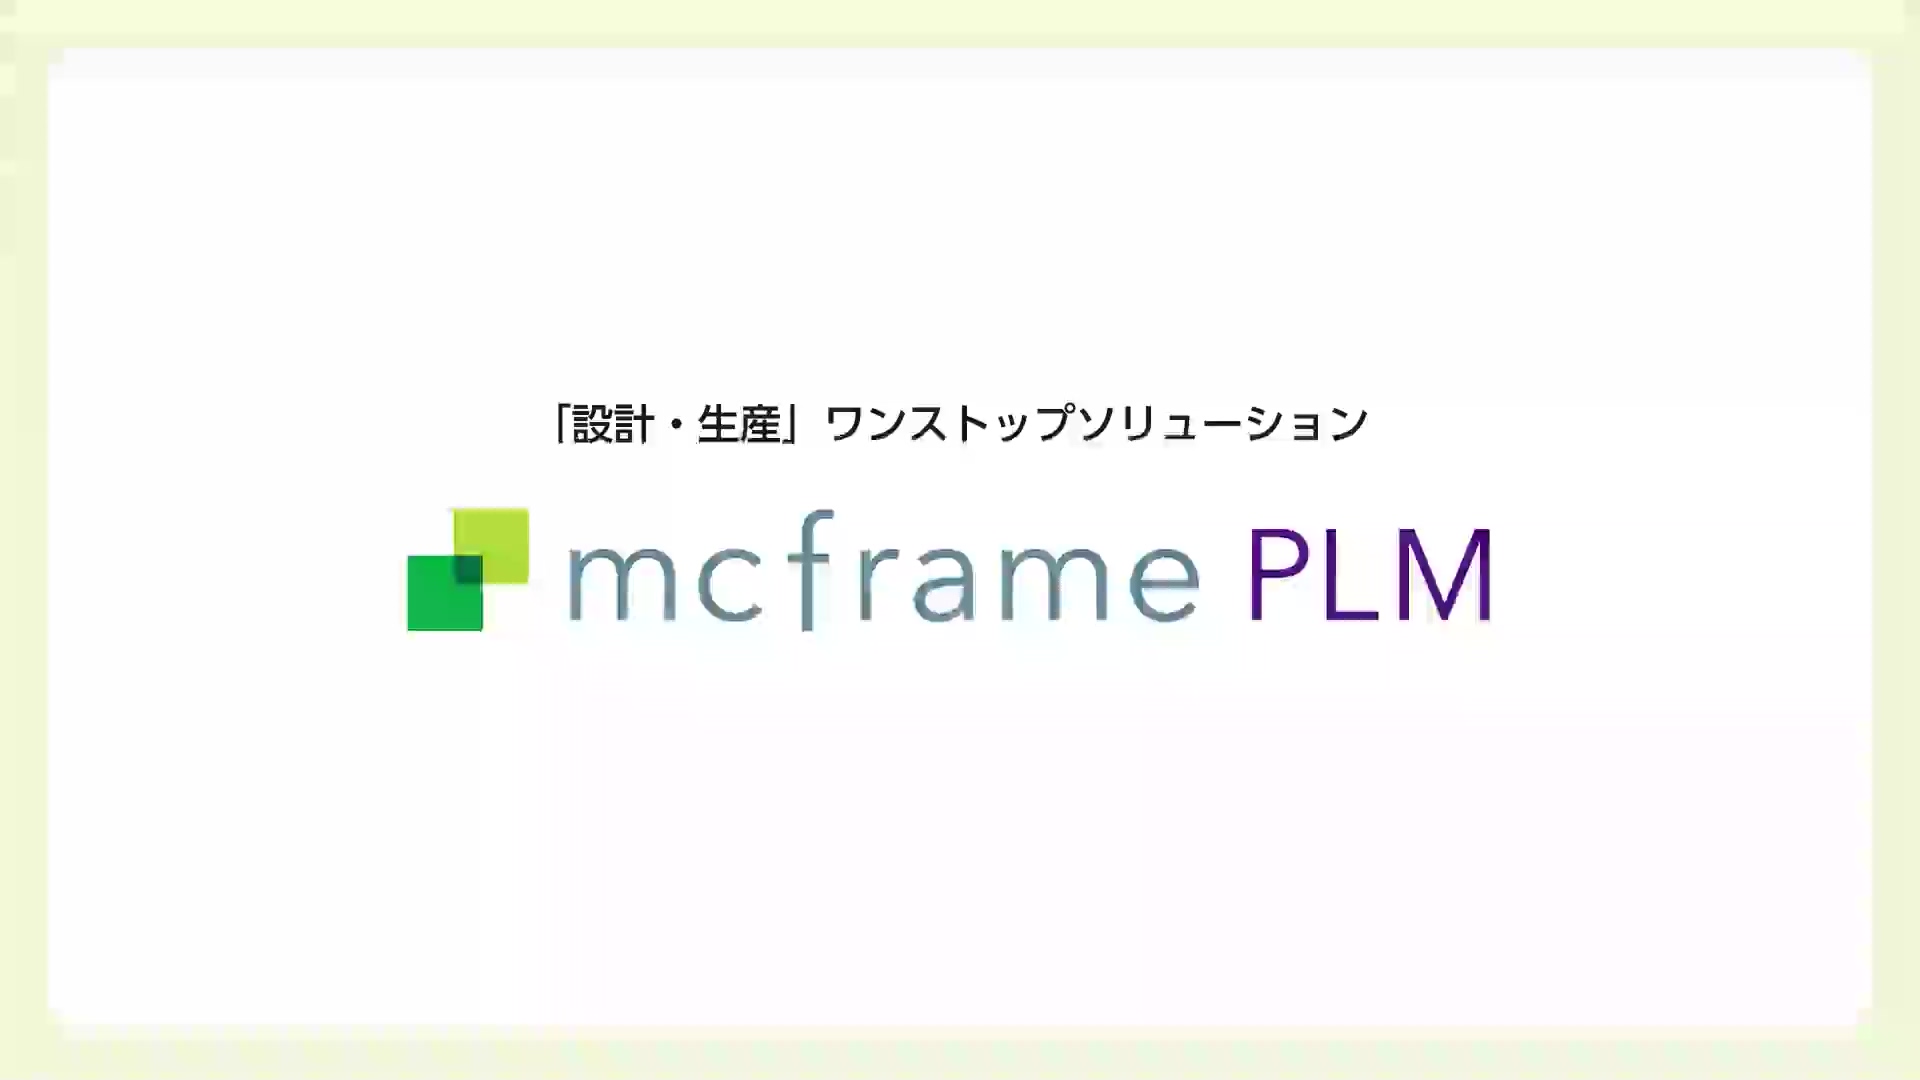 製品 | mcframe PLM シリーズ | mcframe